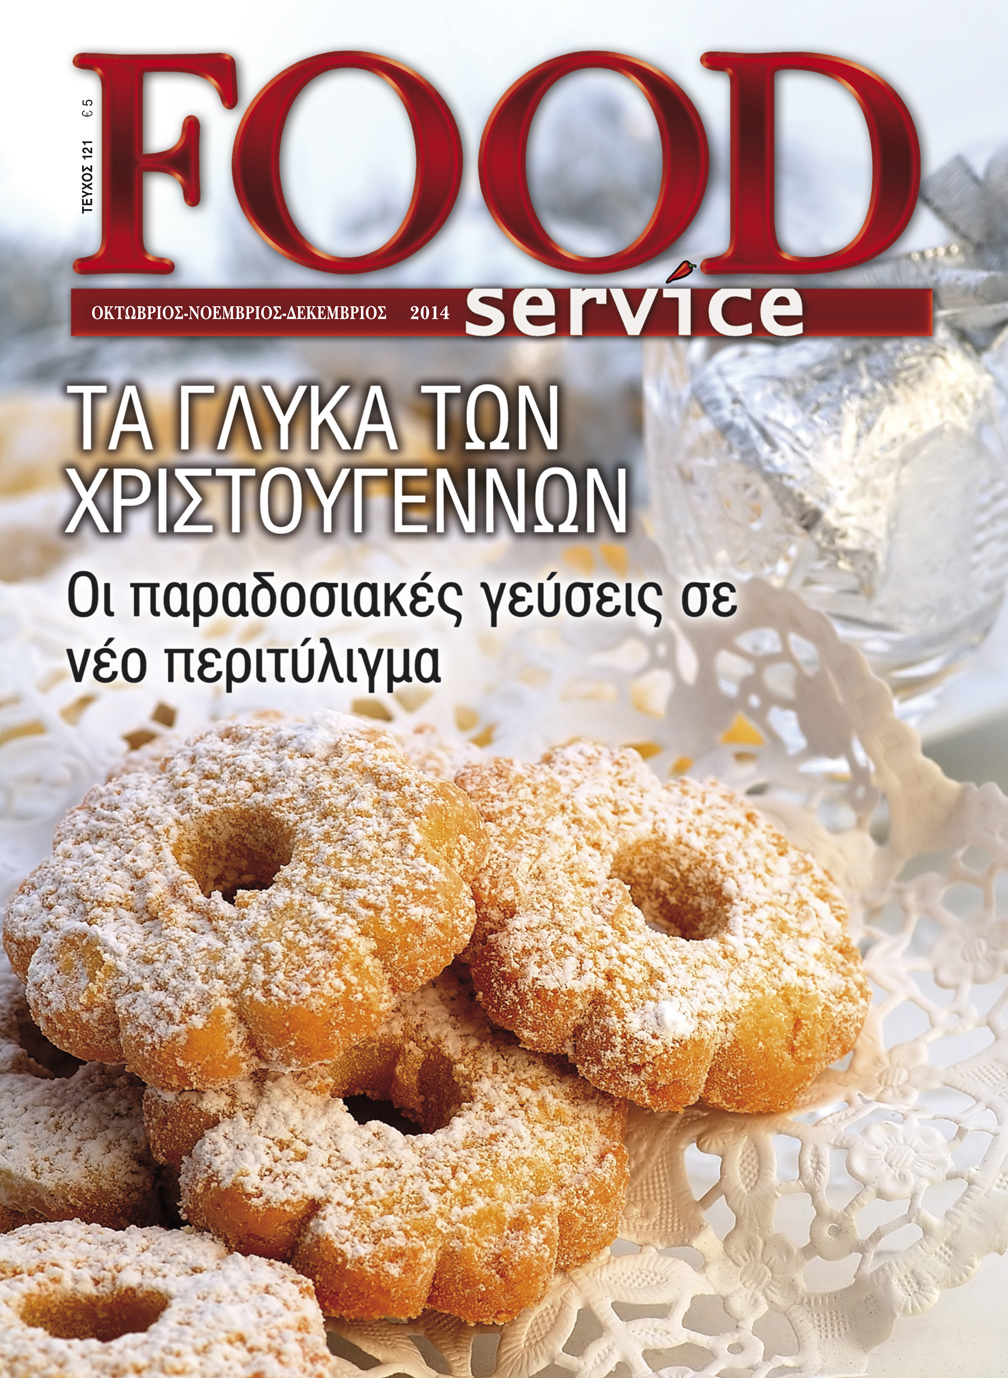 Στο τεύχος Δεκεμβρίου που κυκλοφορεί το κεντρικό θέμα  του περιοδικού είναι αφιερωμένο στα γλυκά των Χριστουγέννων. Pastry chef από όλη την Ελλάδα, συνδράμουν με τις γευστικές τους εμπνεύσεις γεμίζοντας το Food Service γεύσεις και αρώματα. Την θεματολογία του τεύχους συμπληρώνουν οι συνεντεύξεις των Διονύση Αλέρτα και Γιώργου Στυλιανιουδάκη ενώ κυρίαρχο ρόλο κατέχει η παρουσίαση της γαστρονομίας του Δήμου Αμφίπολης!
Καλές γιορτές και καλή Ανάγνωση!